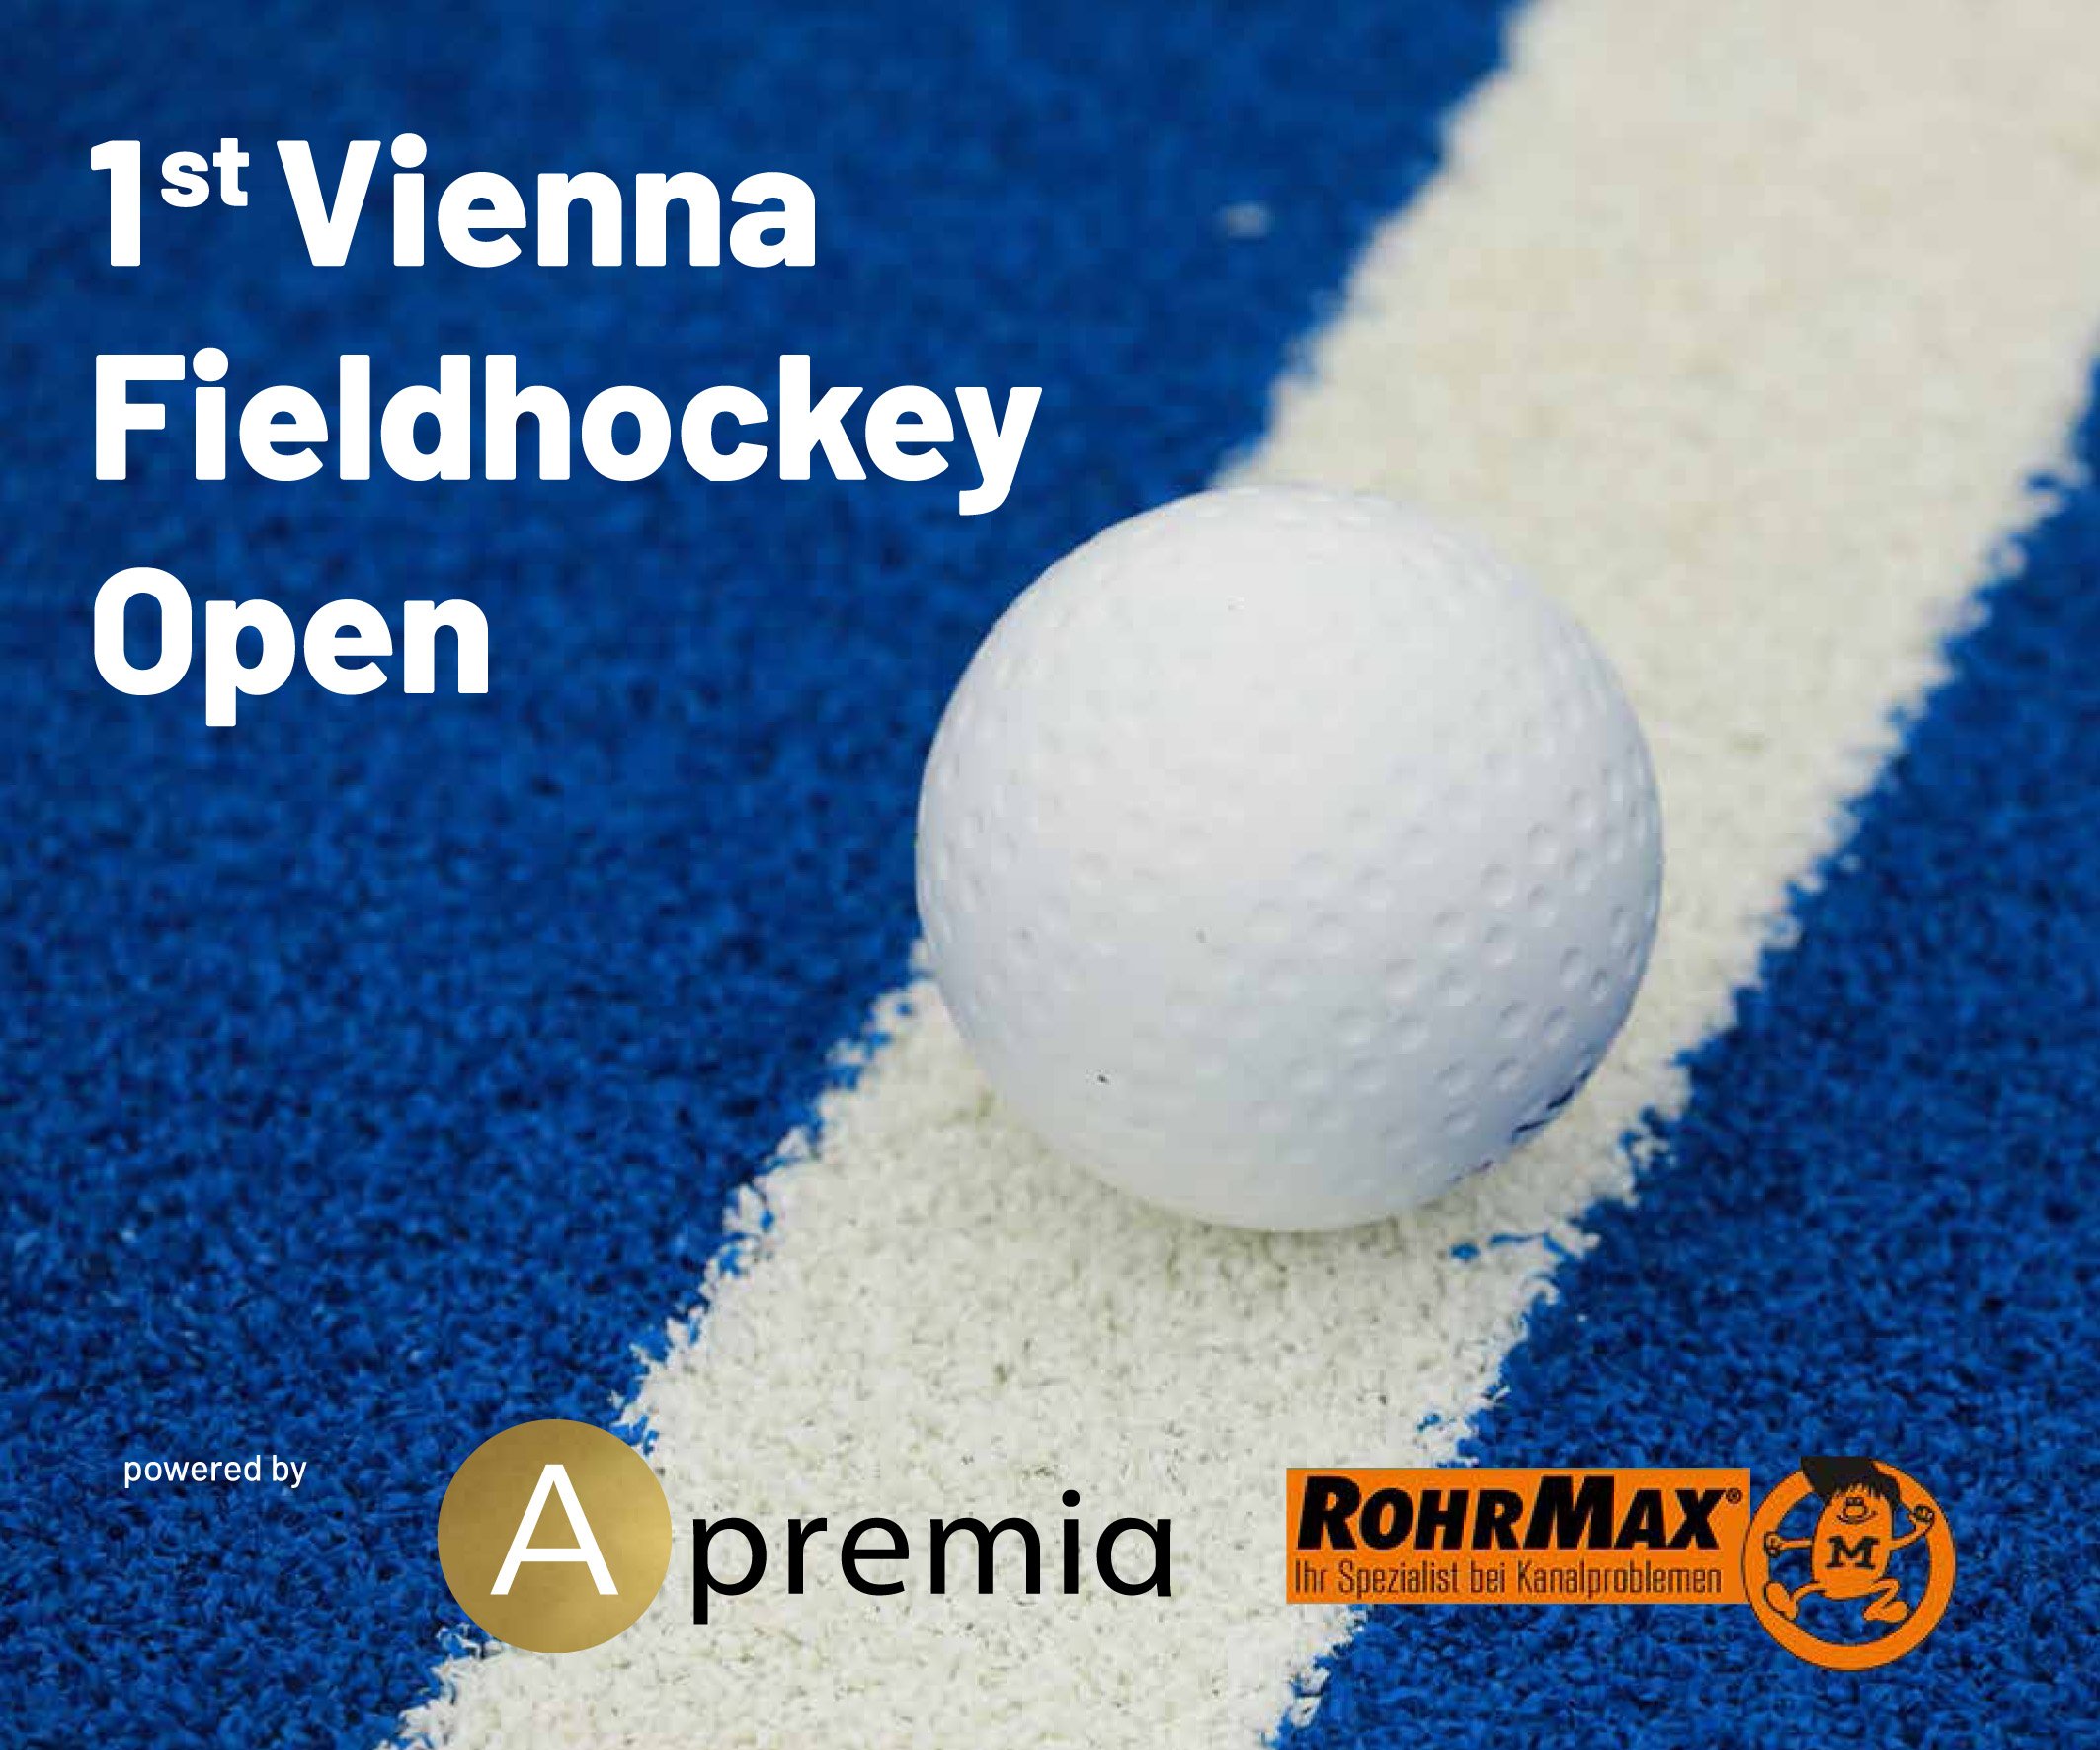 1st Vienna Fieldhockey Open_Banner.jpg